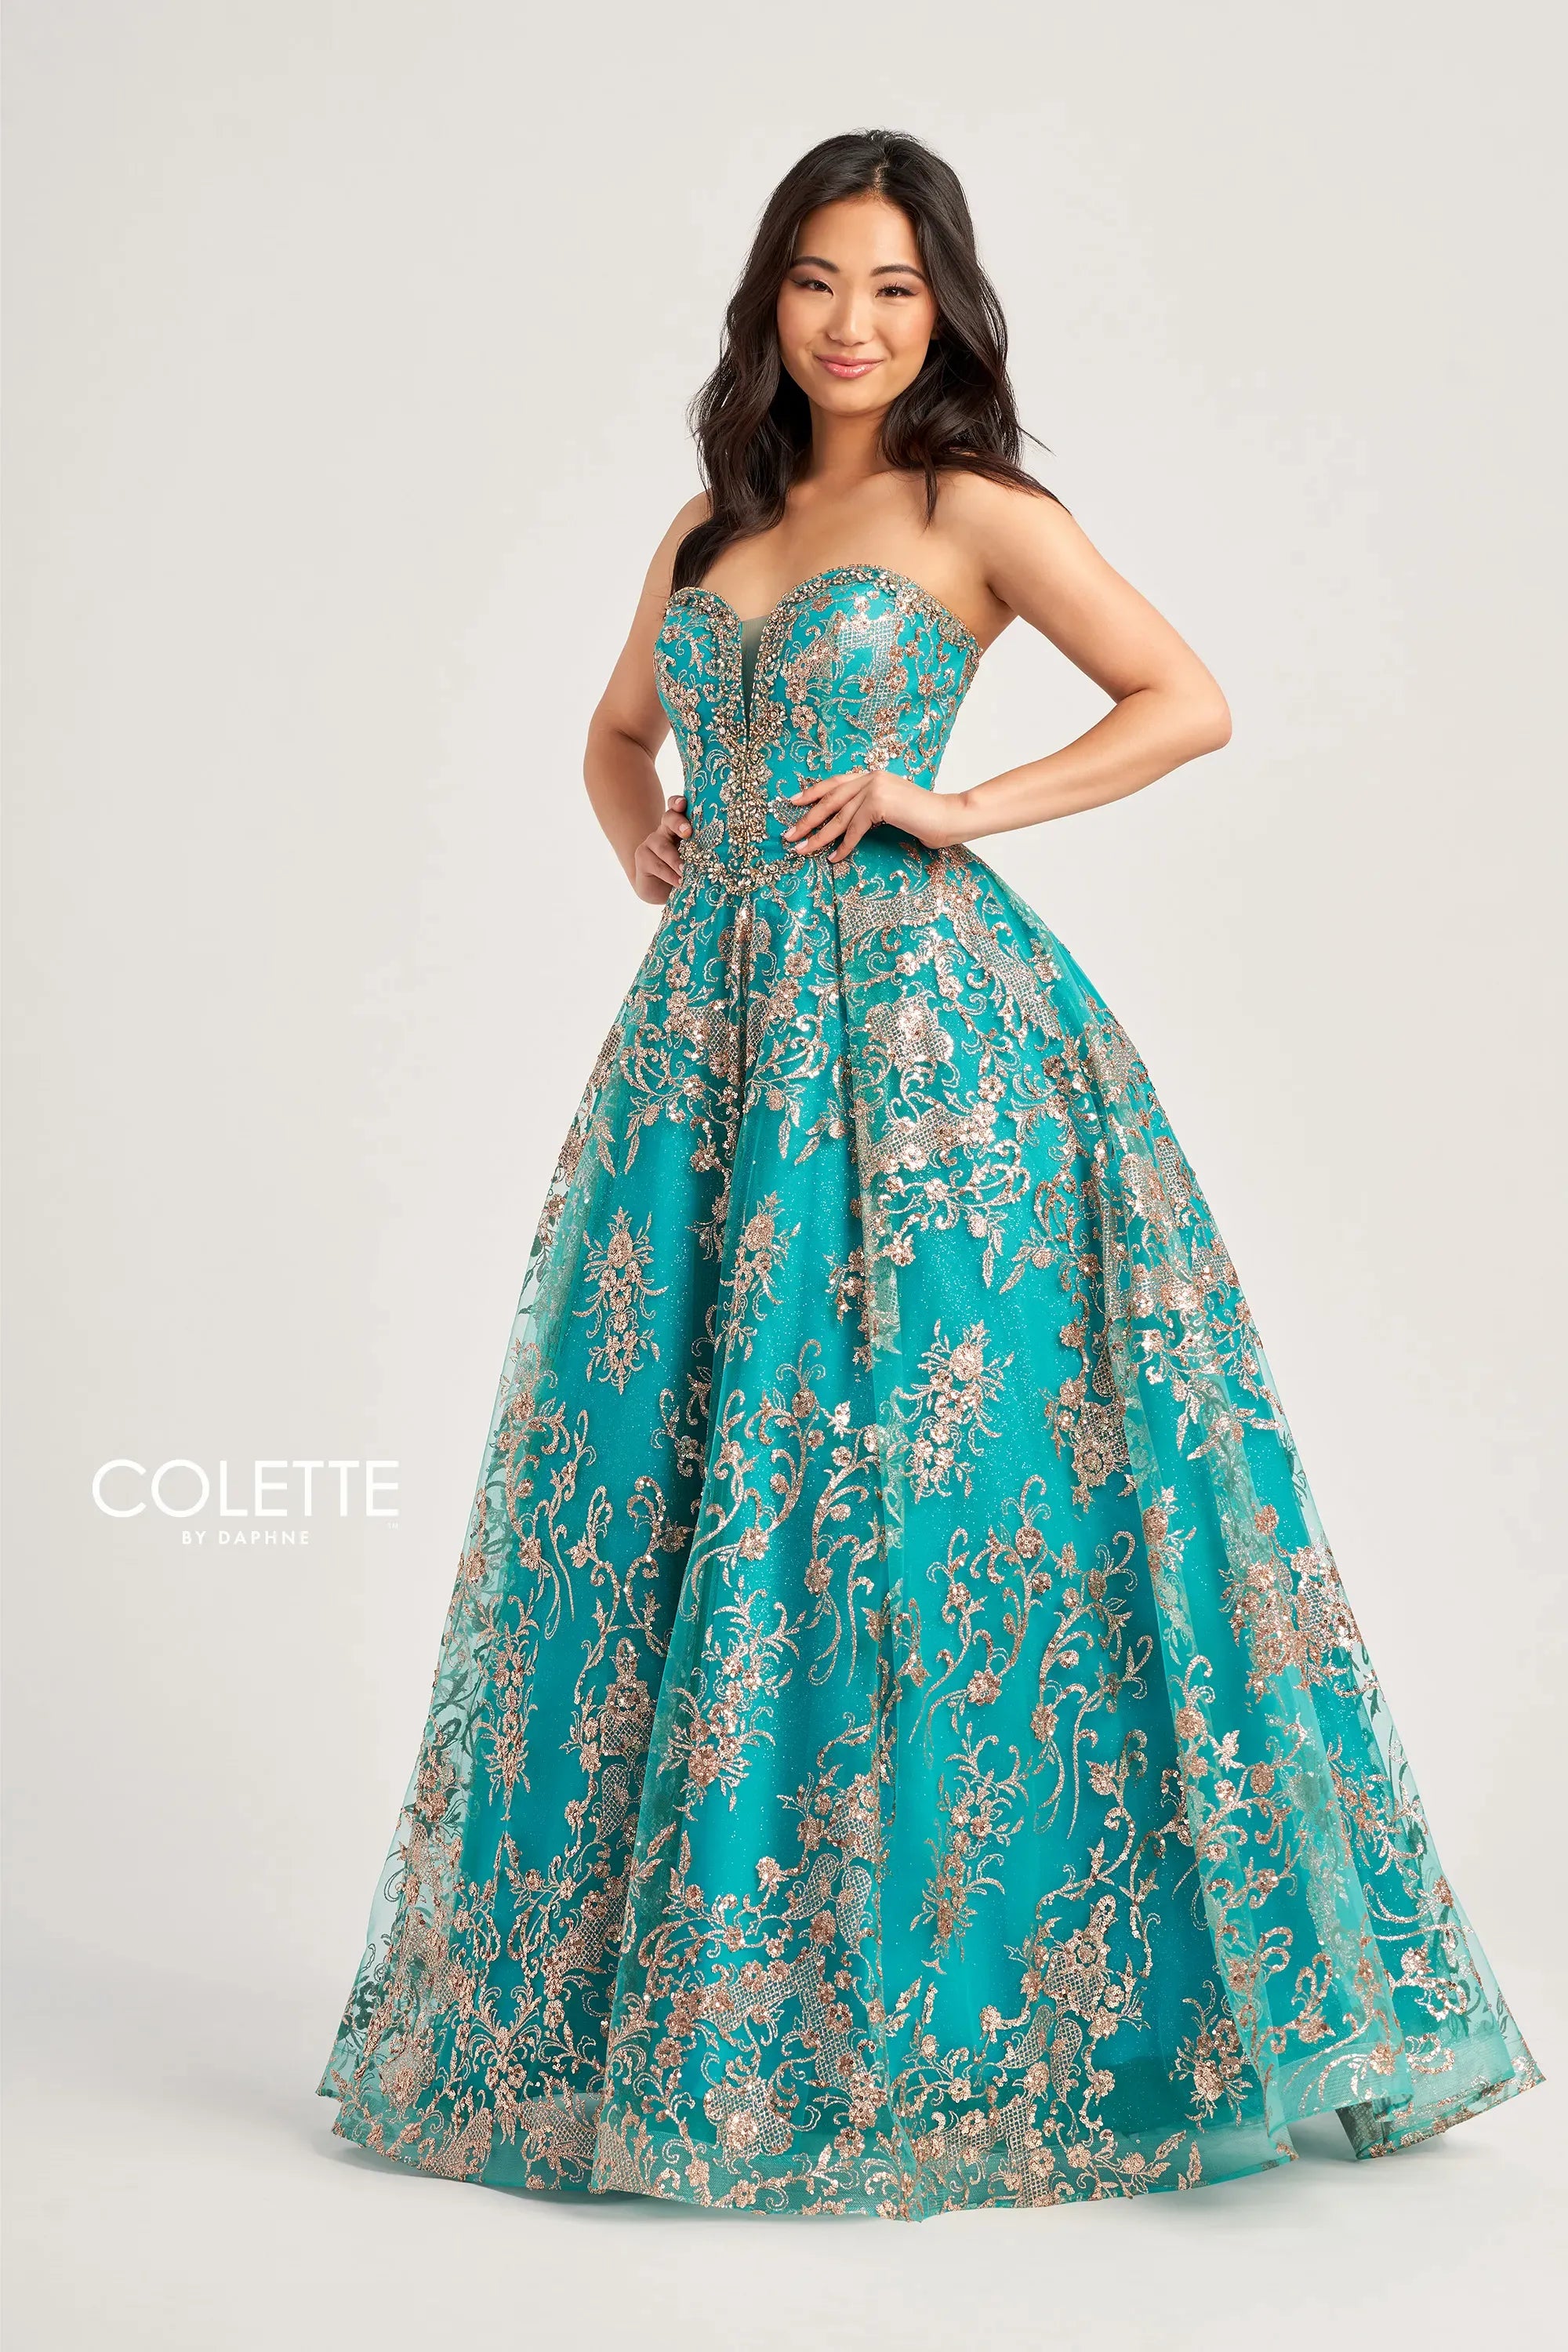 Colette CL5101